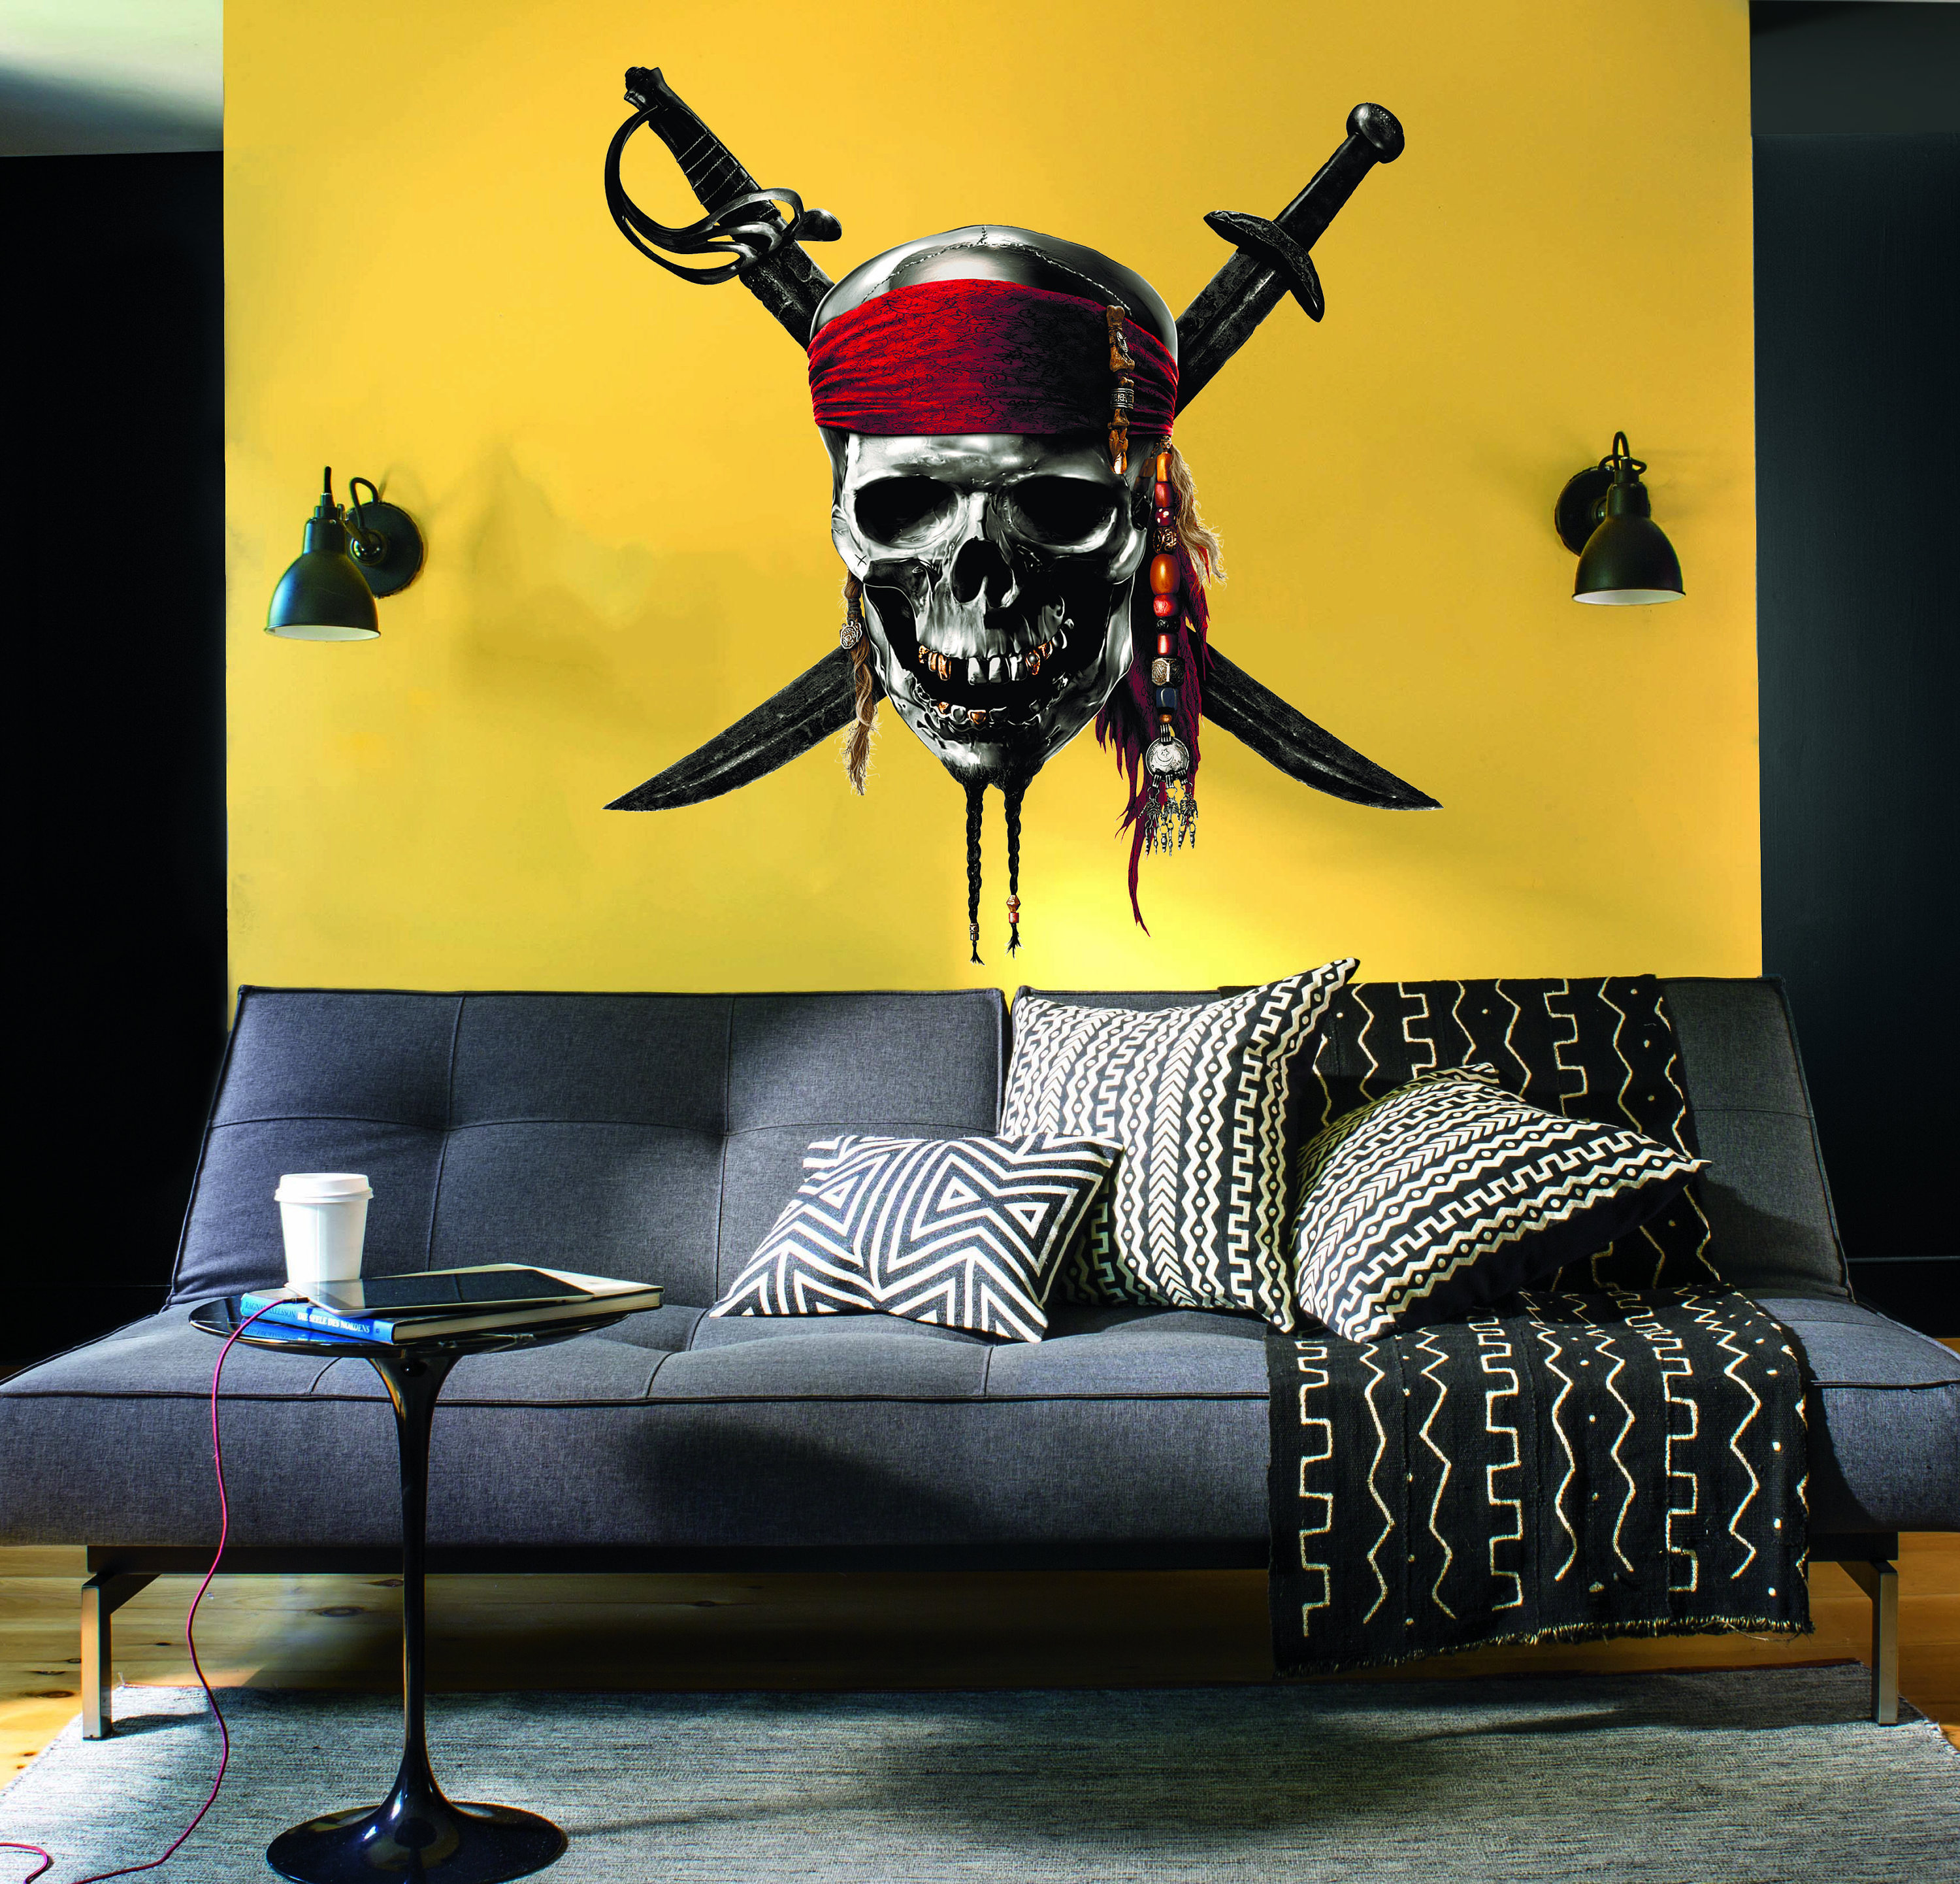 Piraten Totenkopf Aufkleber Pirates Skull Sticker Totenköpfe von style4Bike  jetzt Online kaufen!